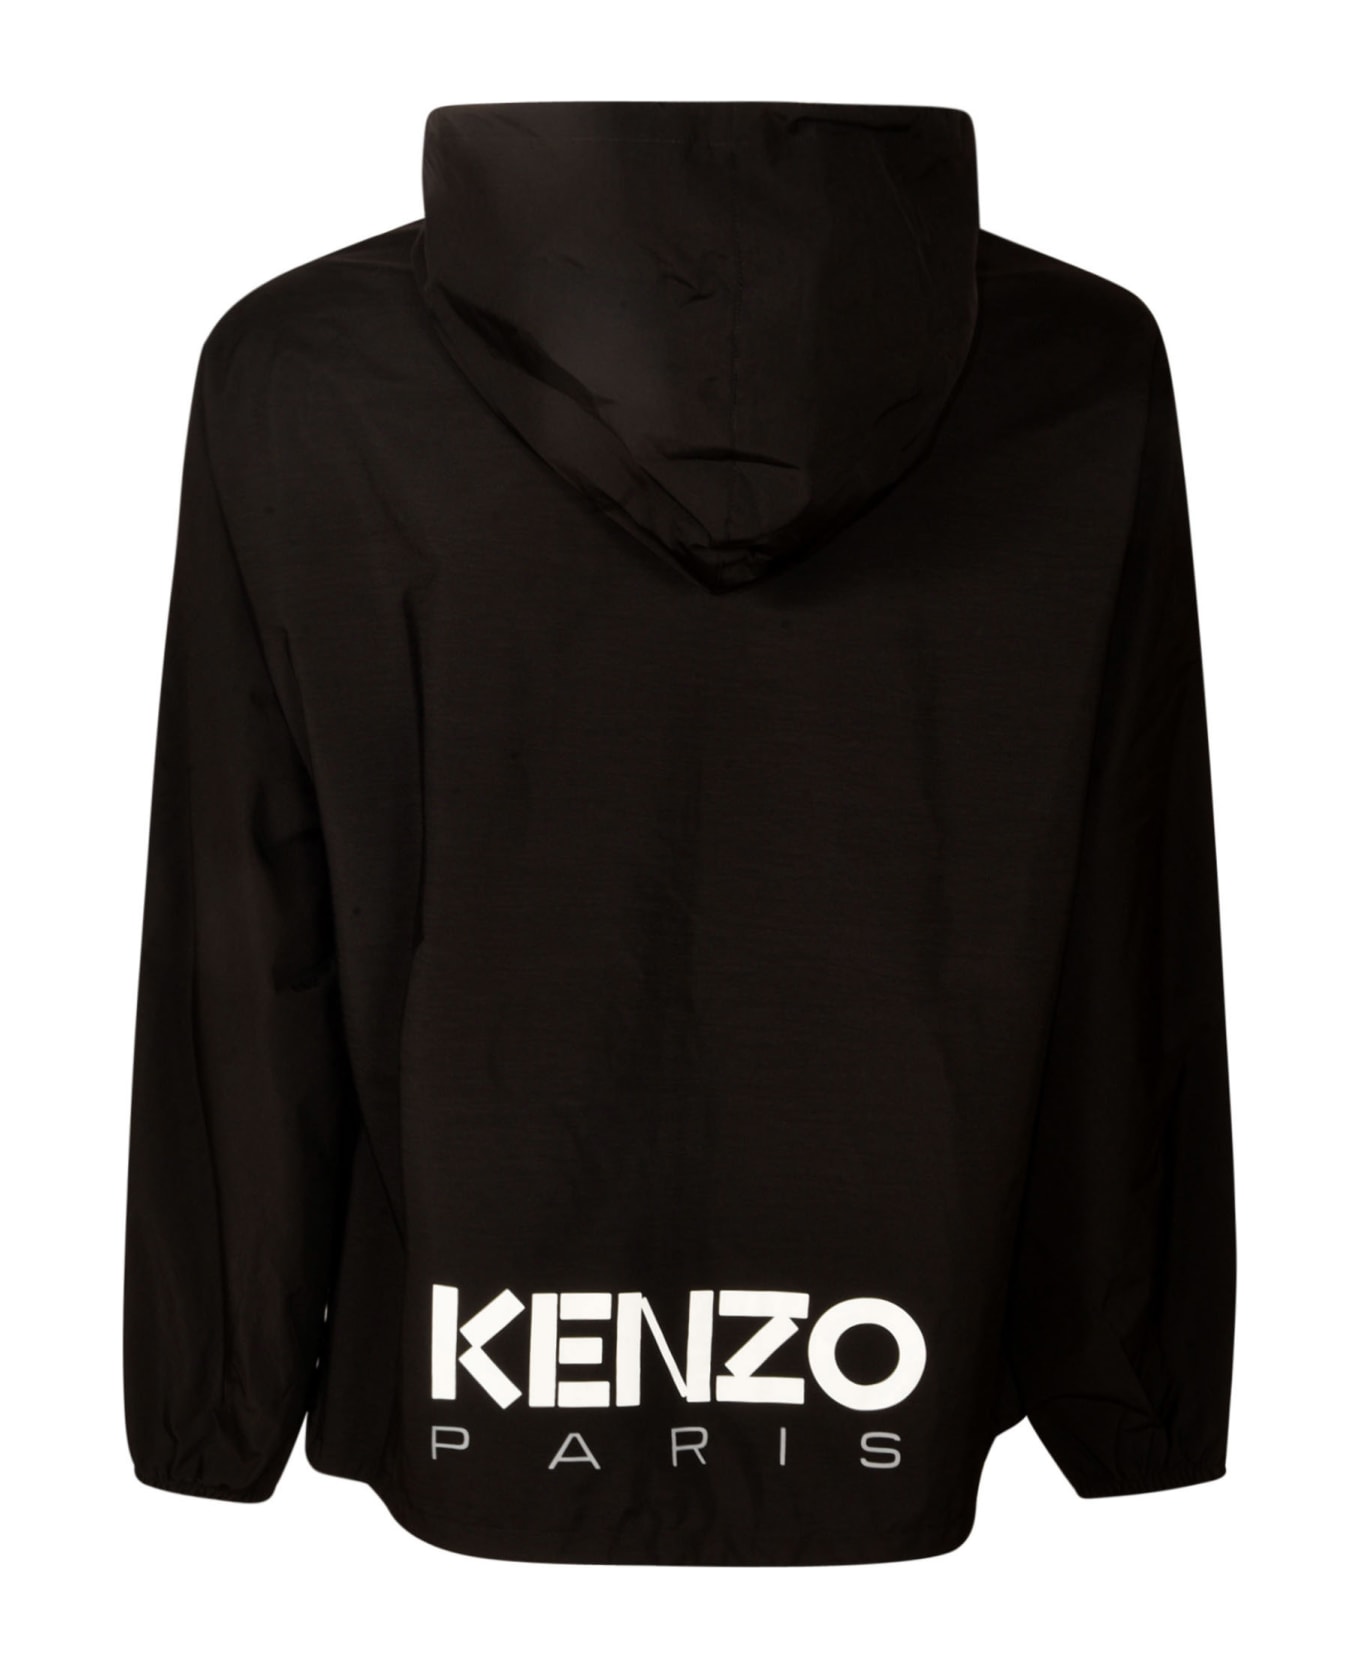 Kenzo Bicolor Windbreaker - Black